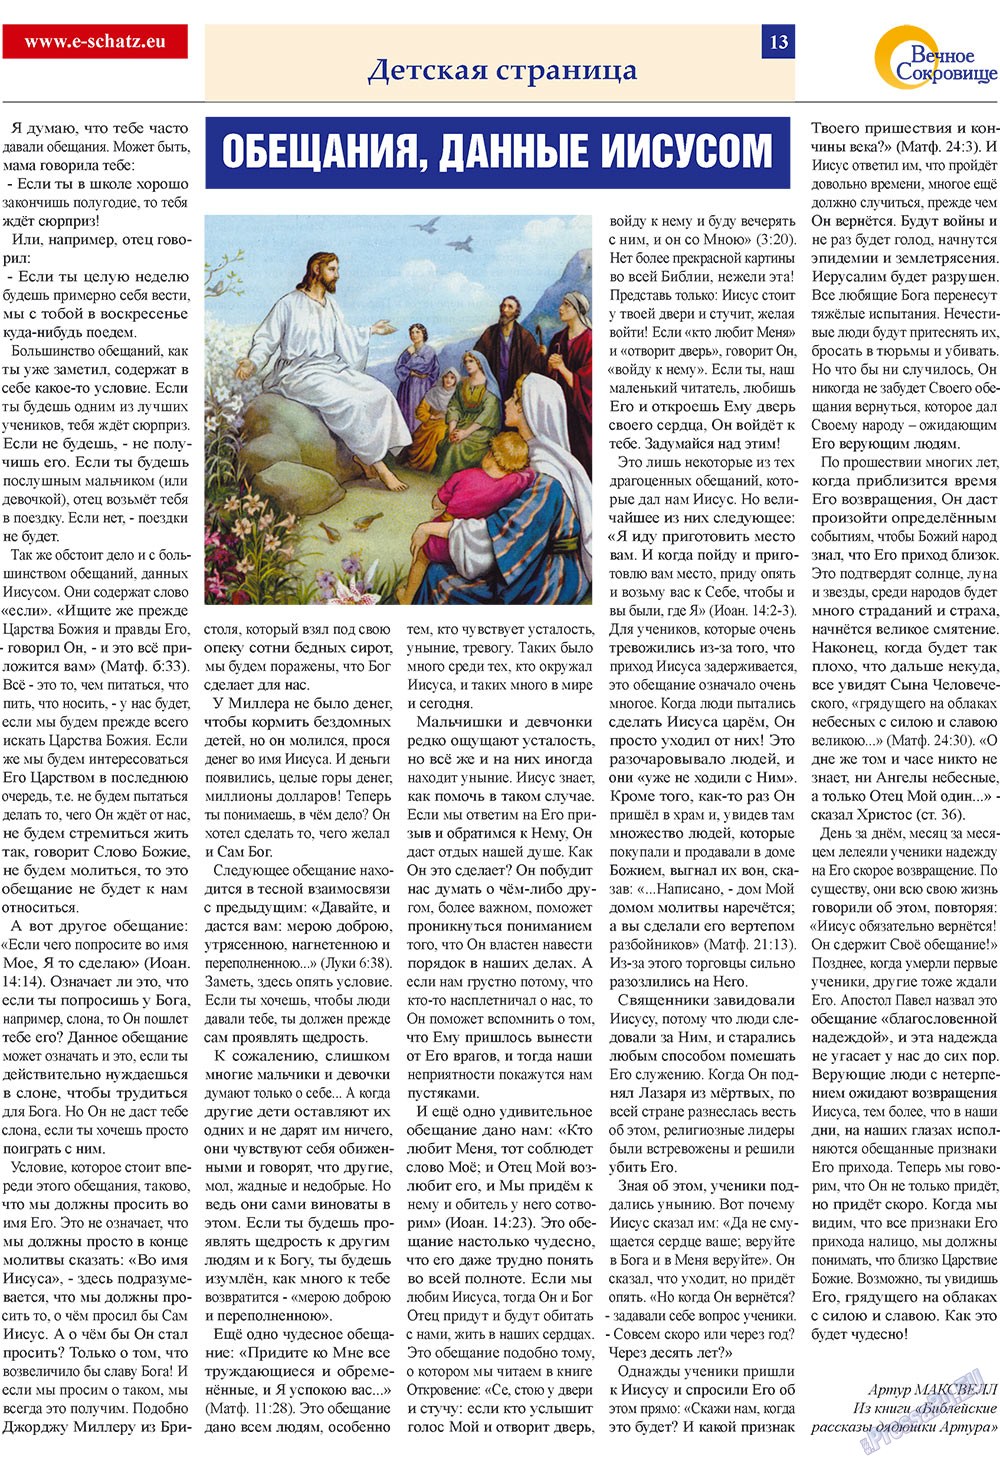 Вечное сокровище, газета. 2009 №2 стр.13